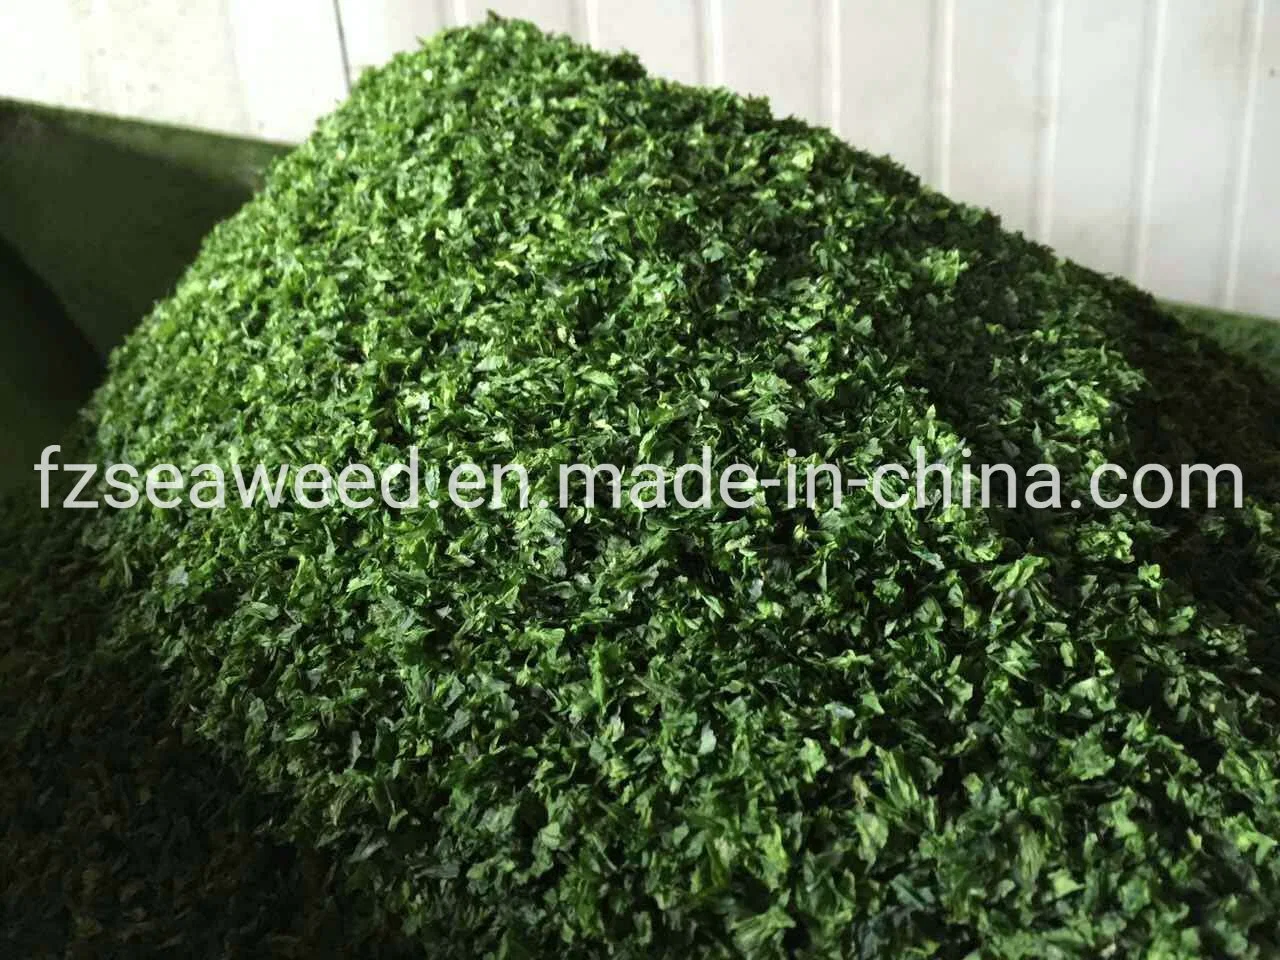 Seaweed Food Ingredient, Green Sea Algae, Seaweed Ulva in Bulk